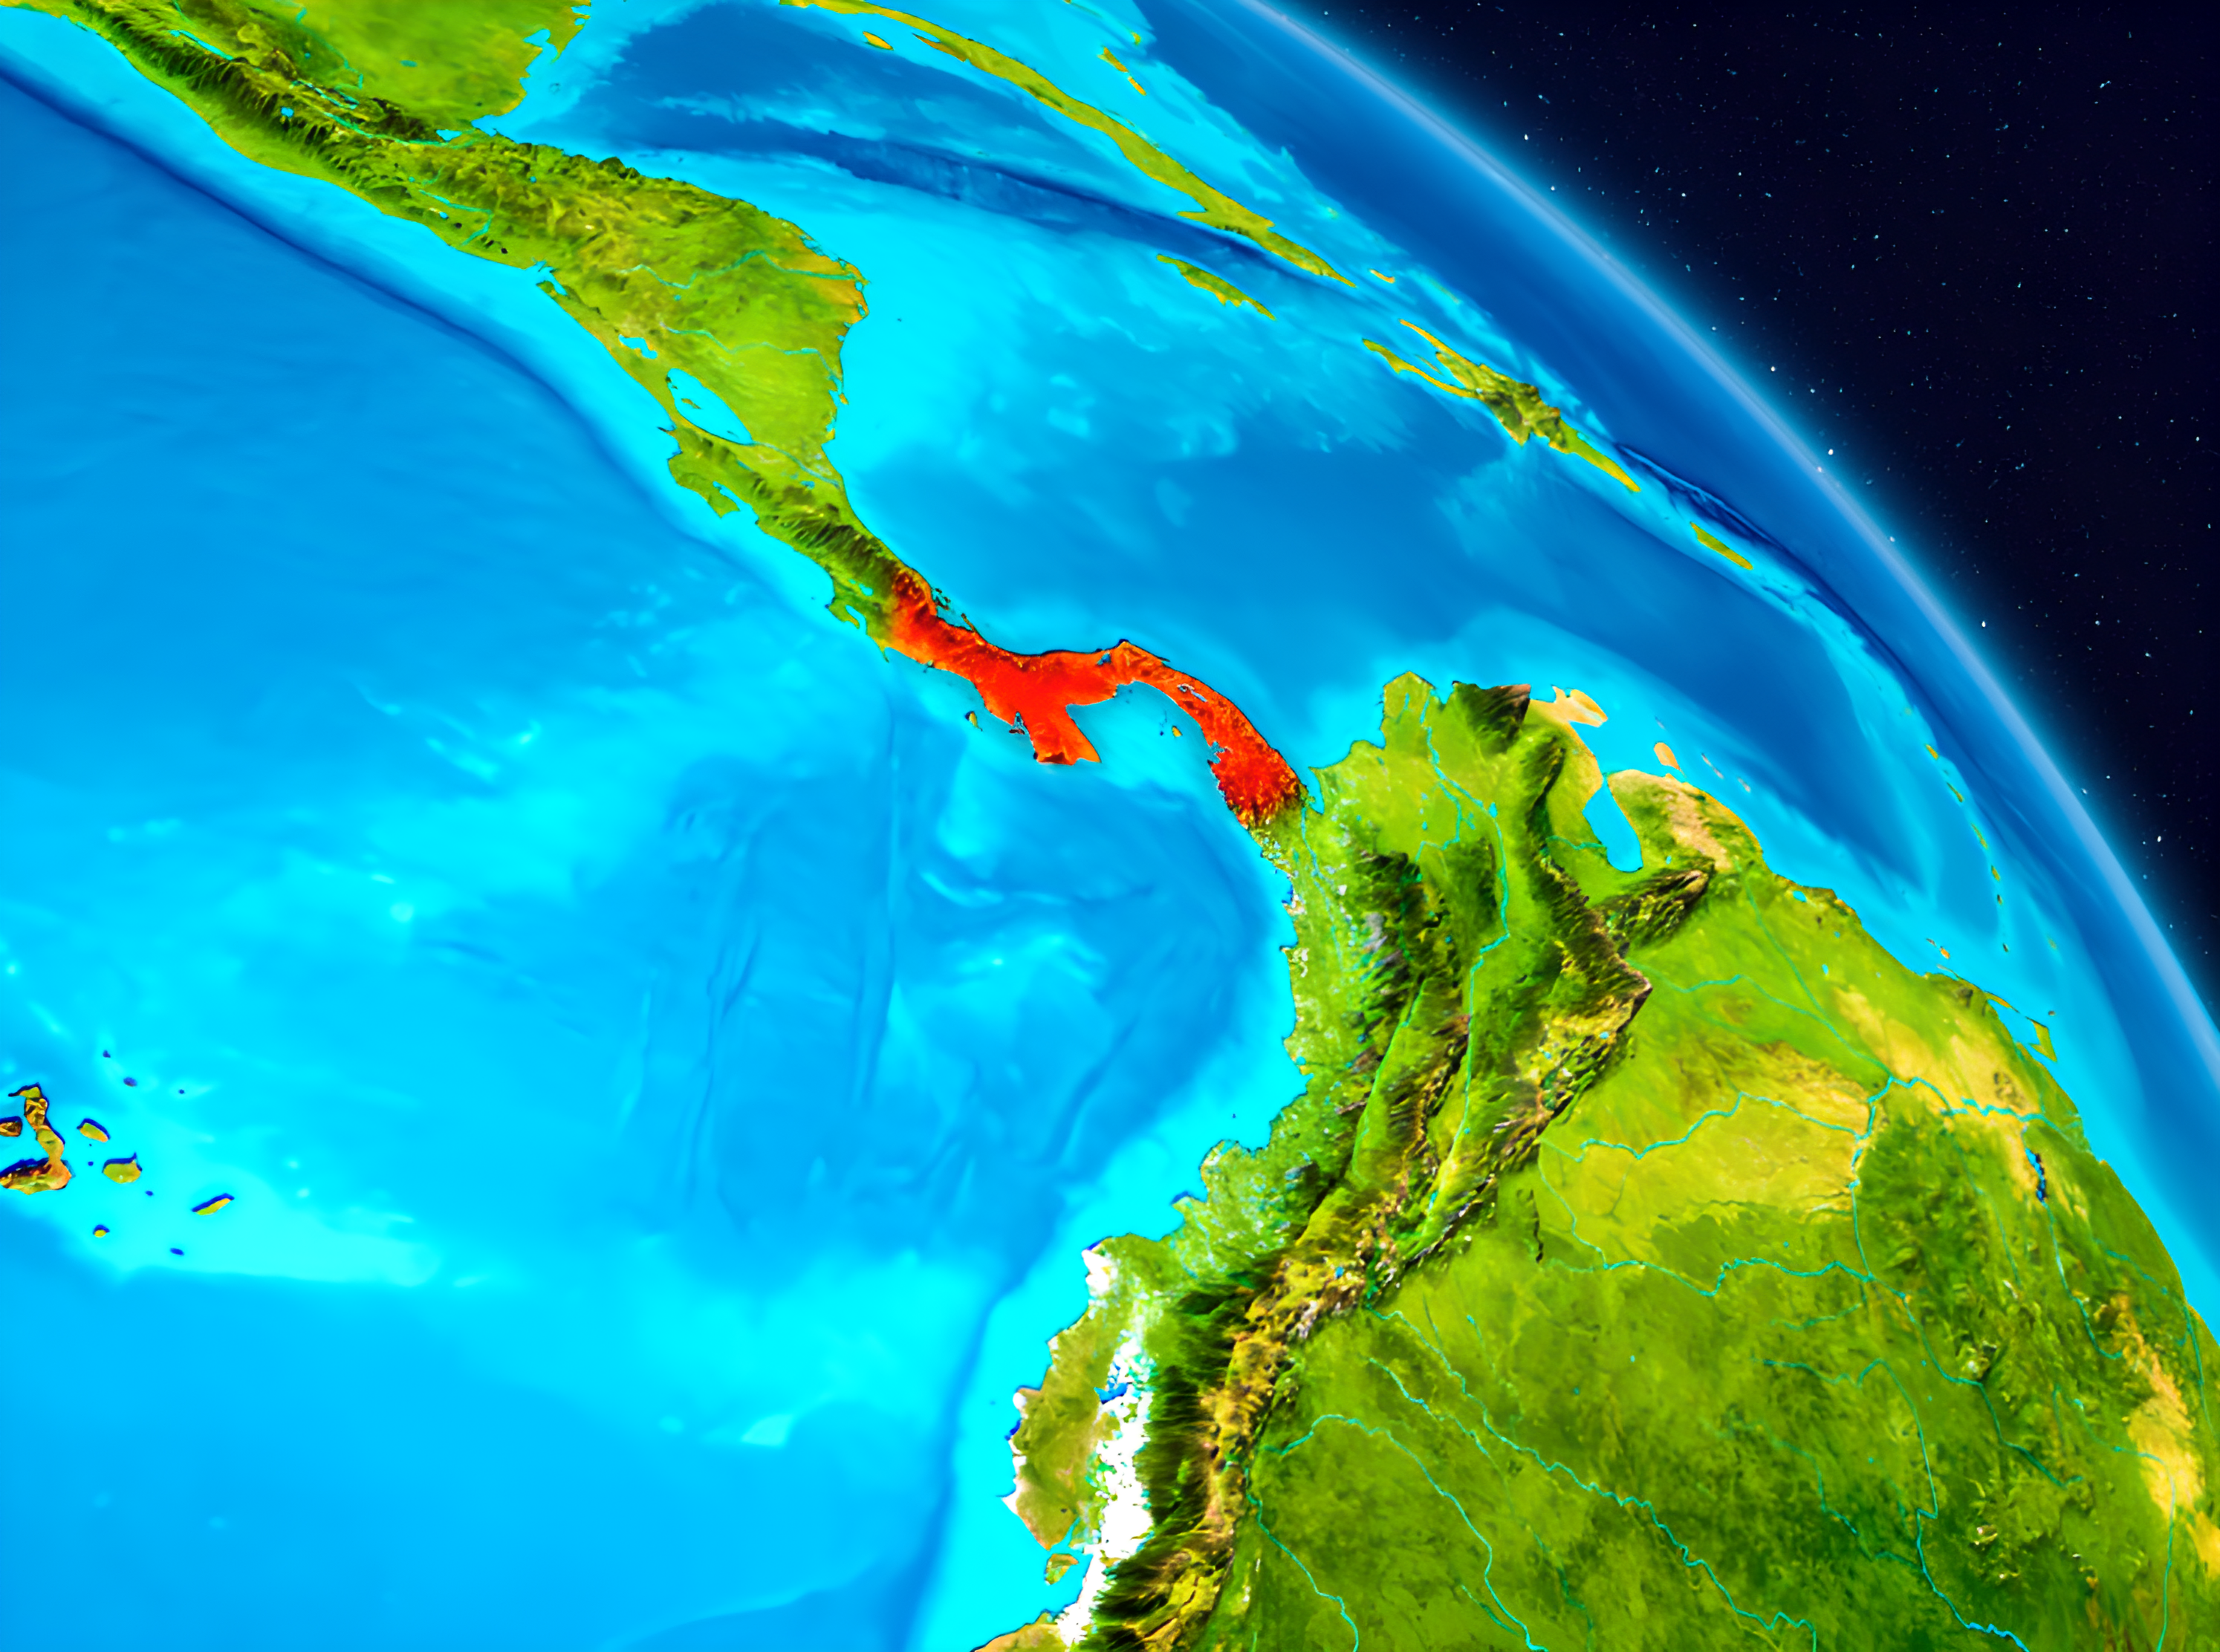 Mapa Panamy